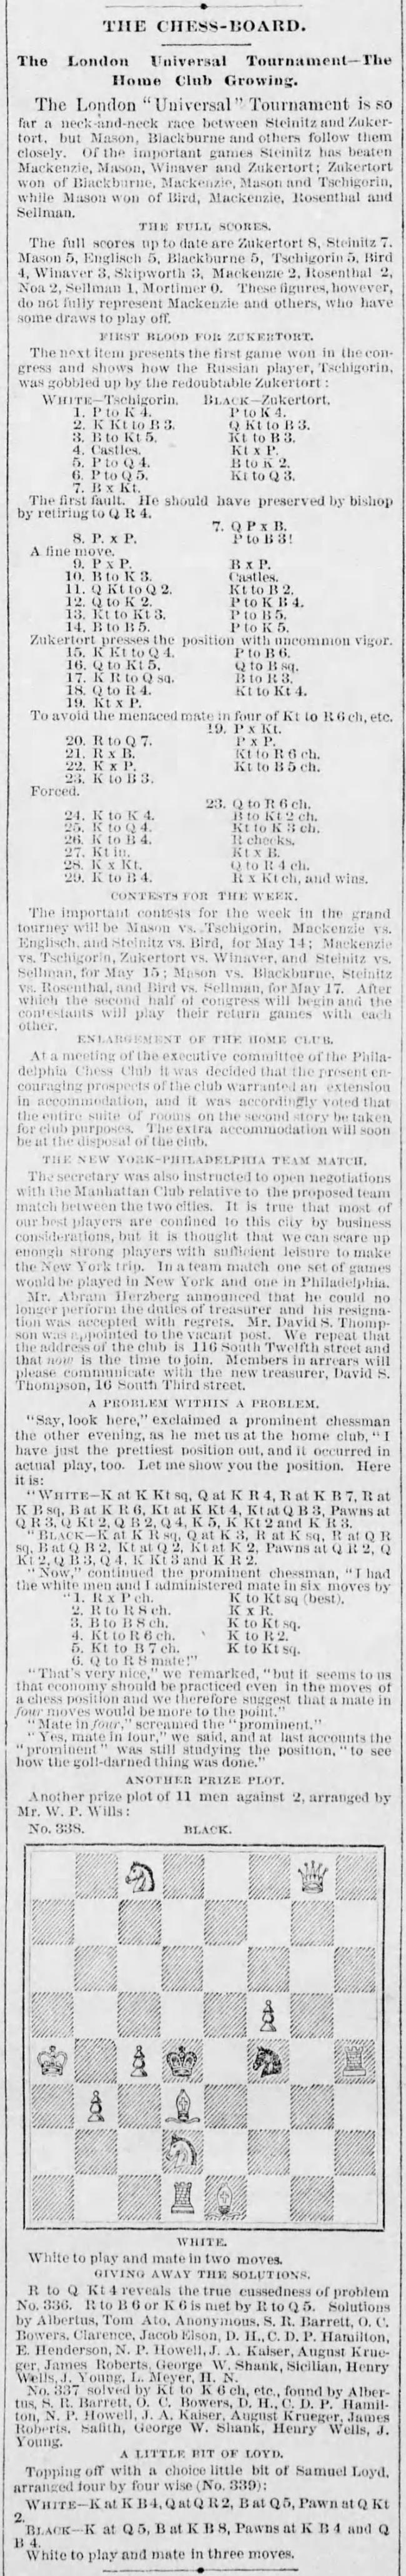 1883.05.13-01 Philadelphia Times.jpg